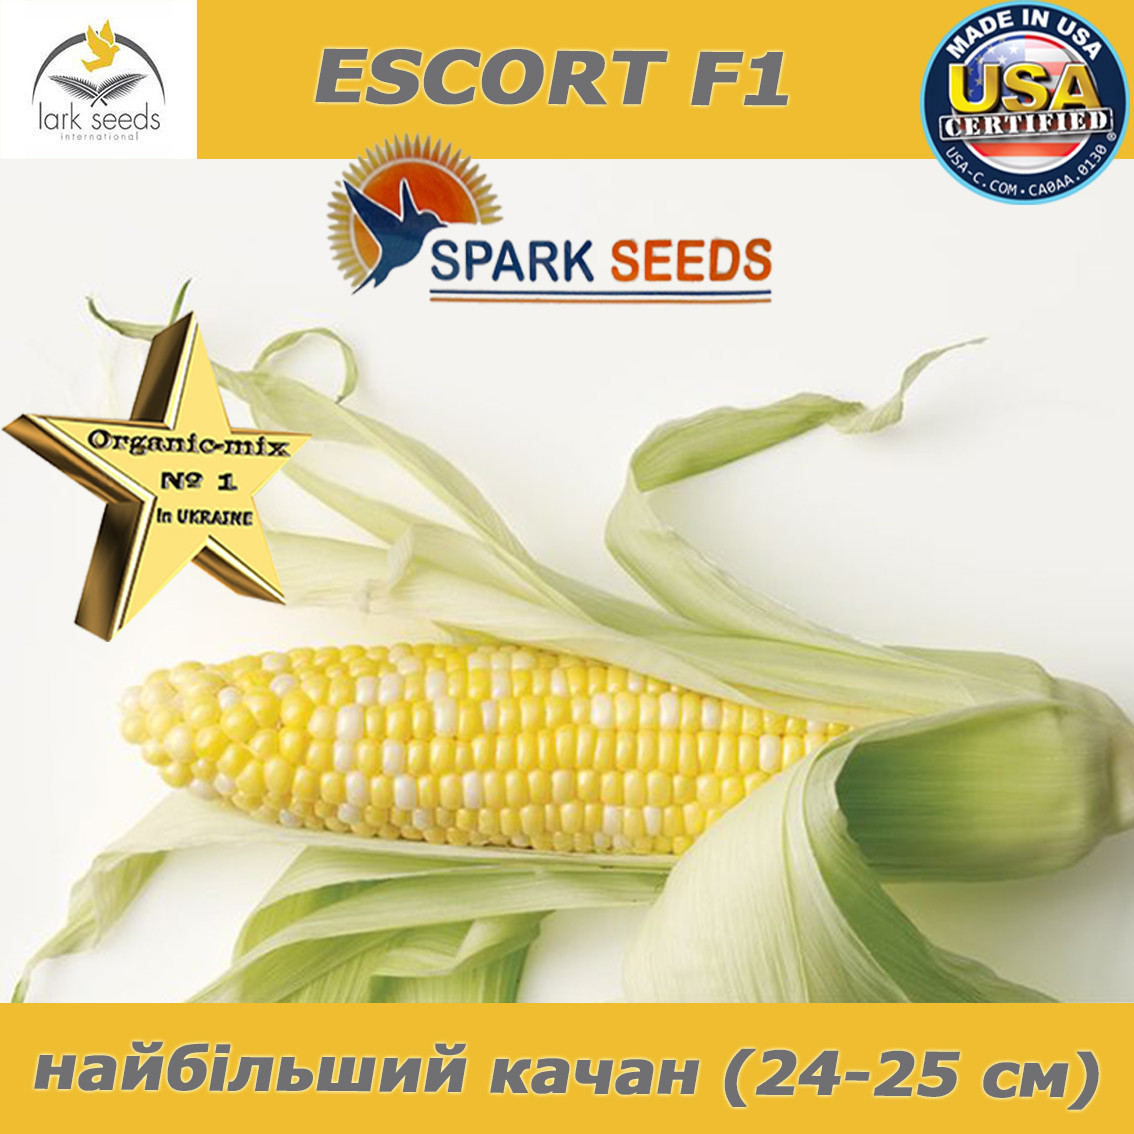 Кукурудза біколор (двоколірна) цукрова ескорт F1, 25 000 насіння, ТМ Spark seeds (США)